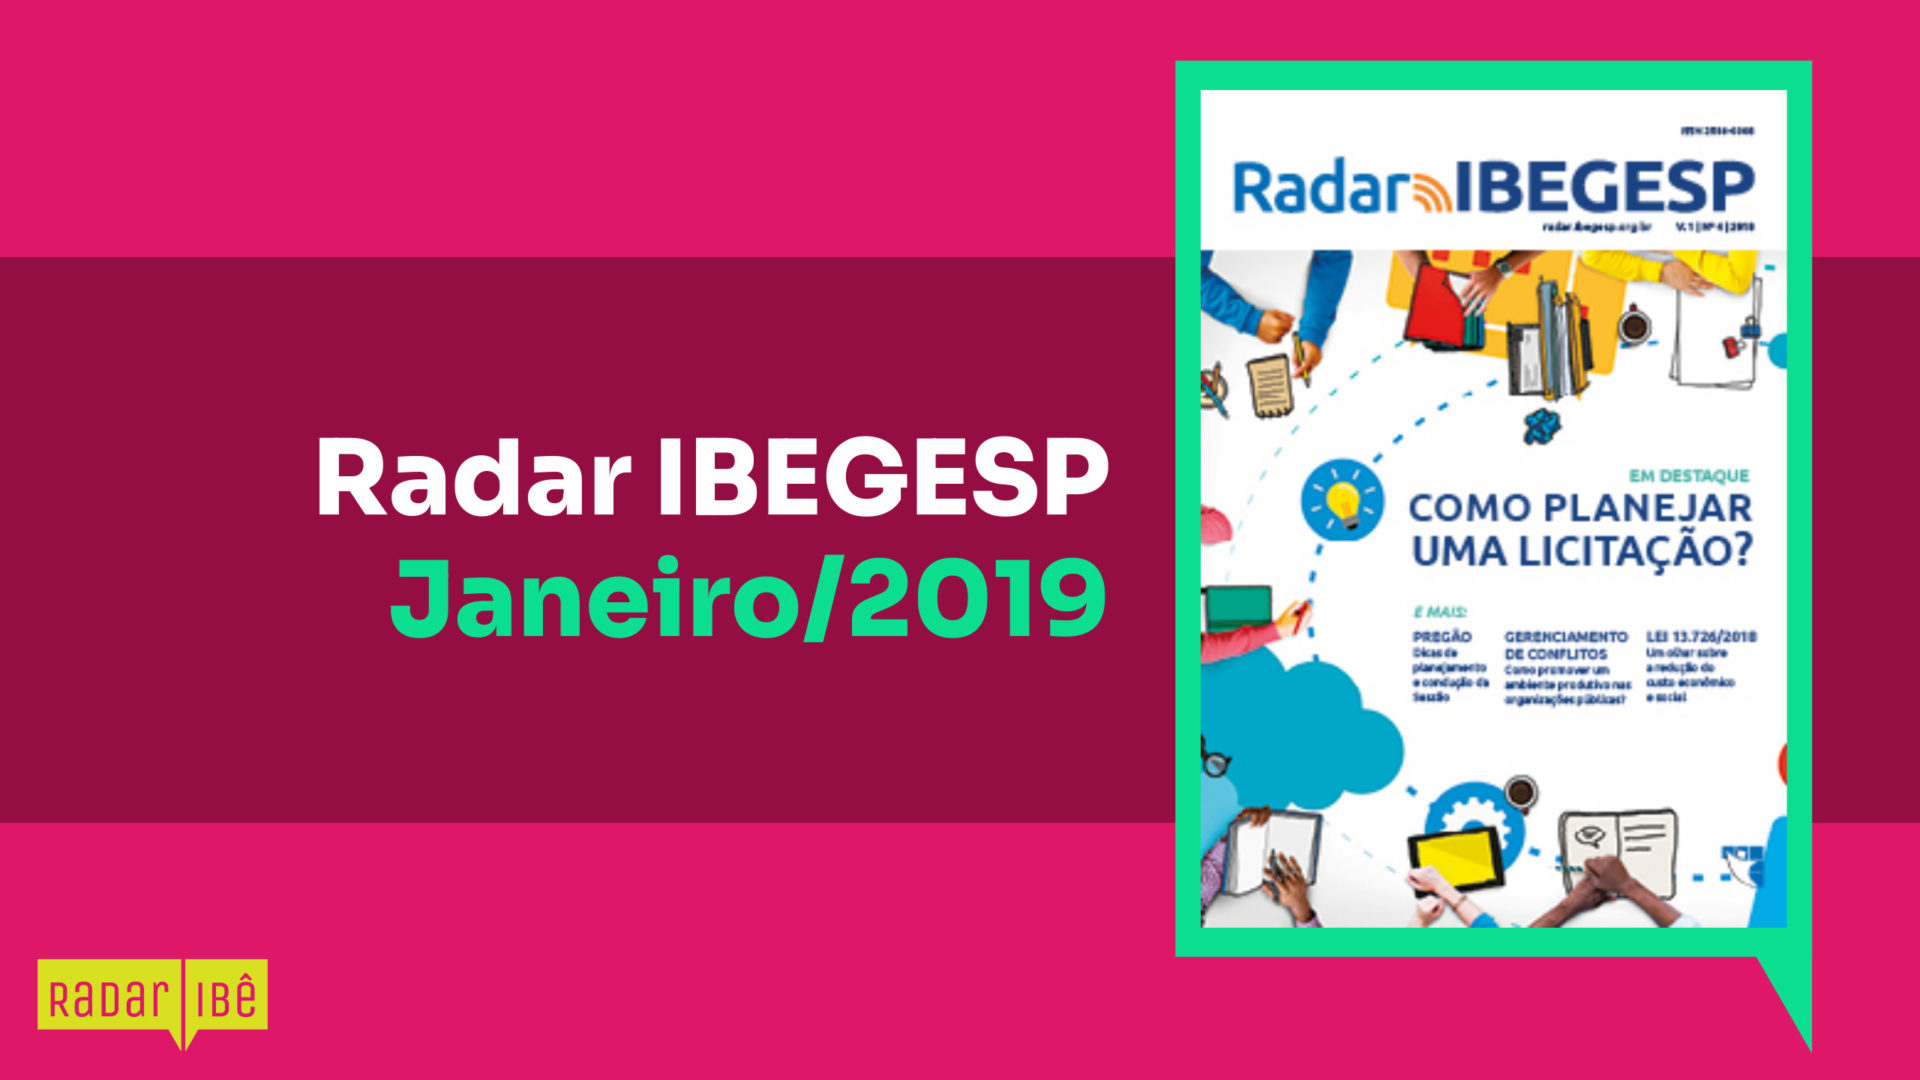 Radar IBEGESP Janeiro 2019